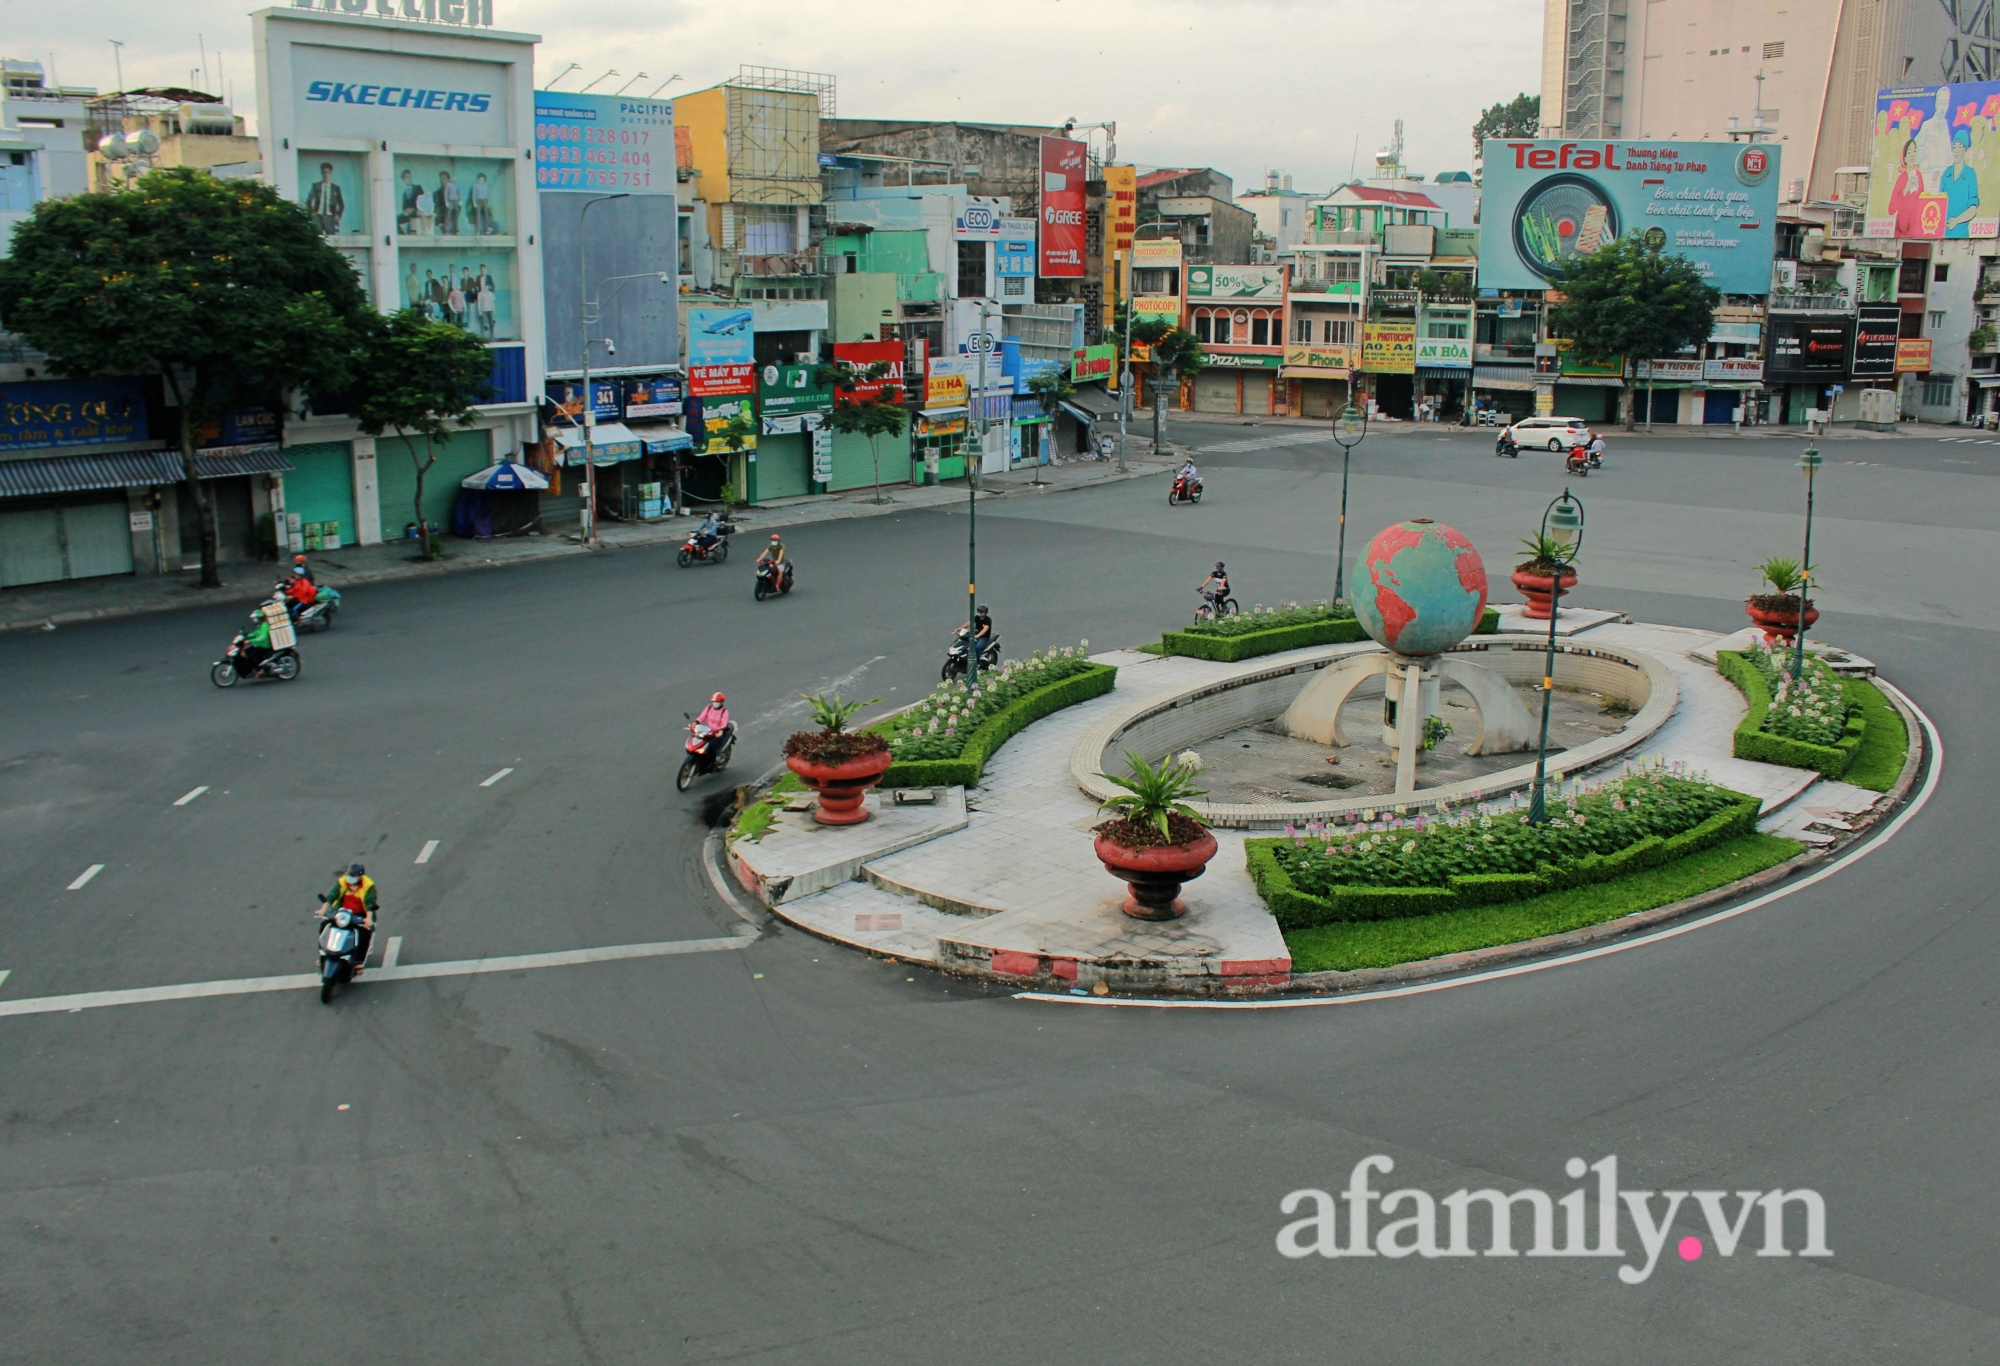 Chùm Ảnh: Đường phố Sài Gòn ngày đầu tiên nới lỏng - Ảnh 1.